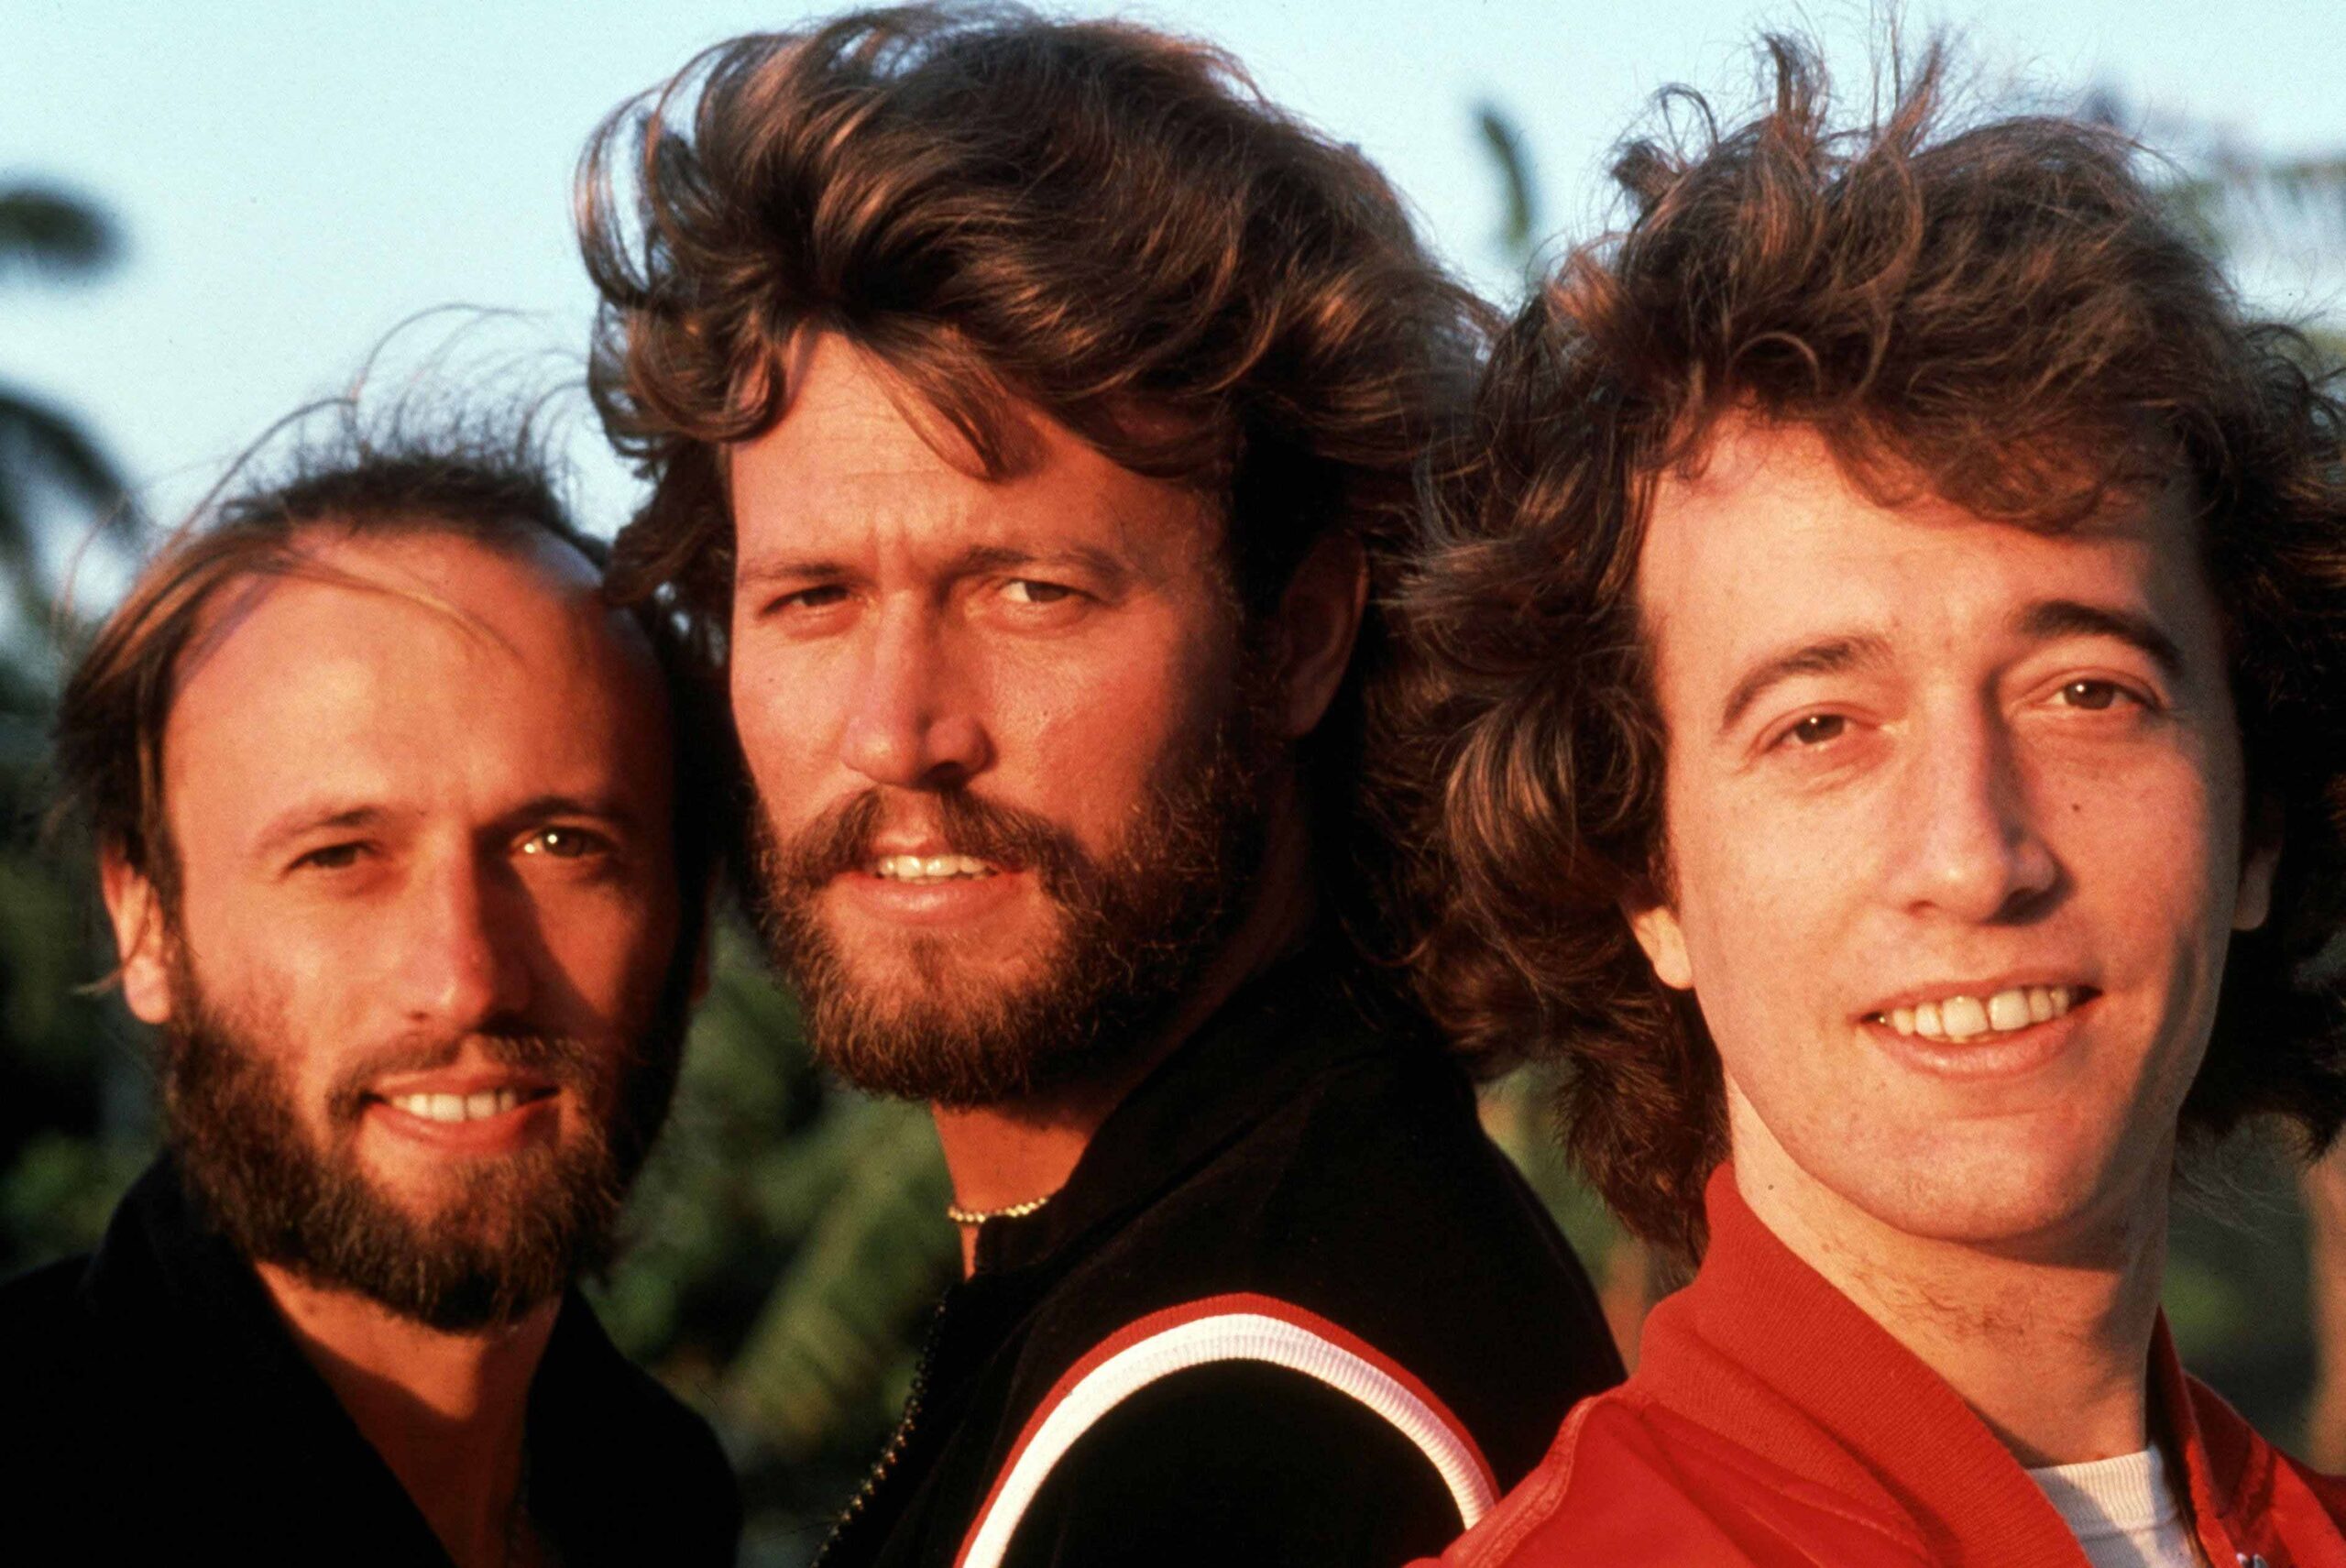 Podrá verse en España el documental sobre los Bee Gees